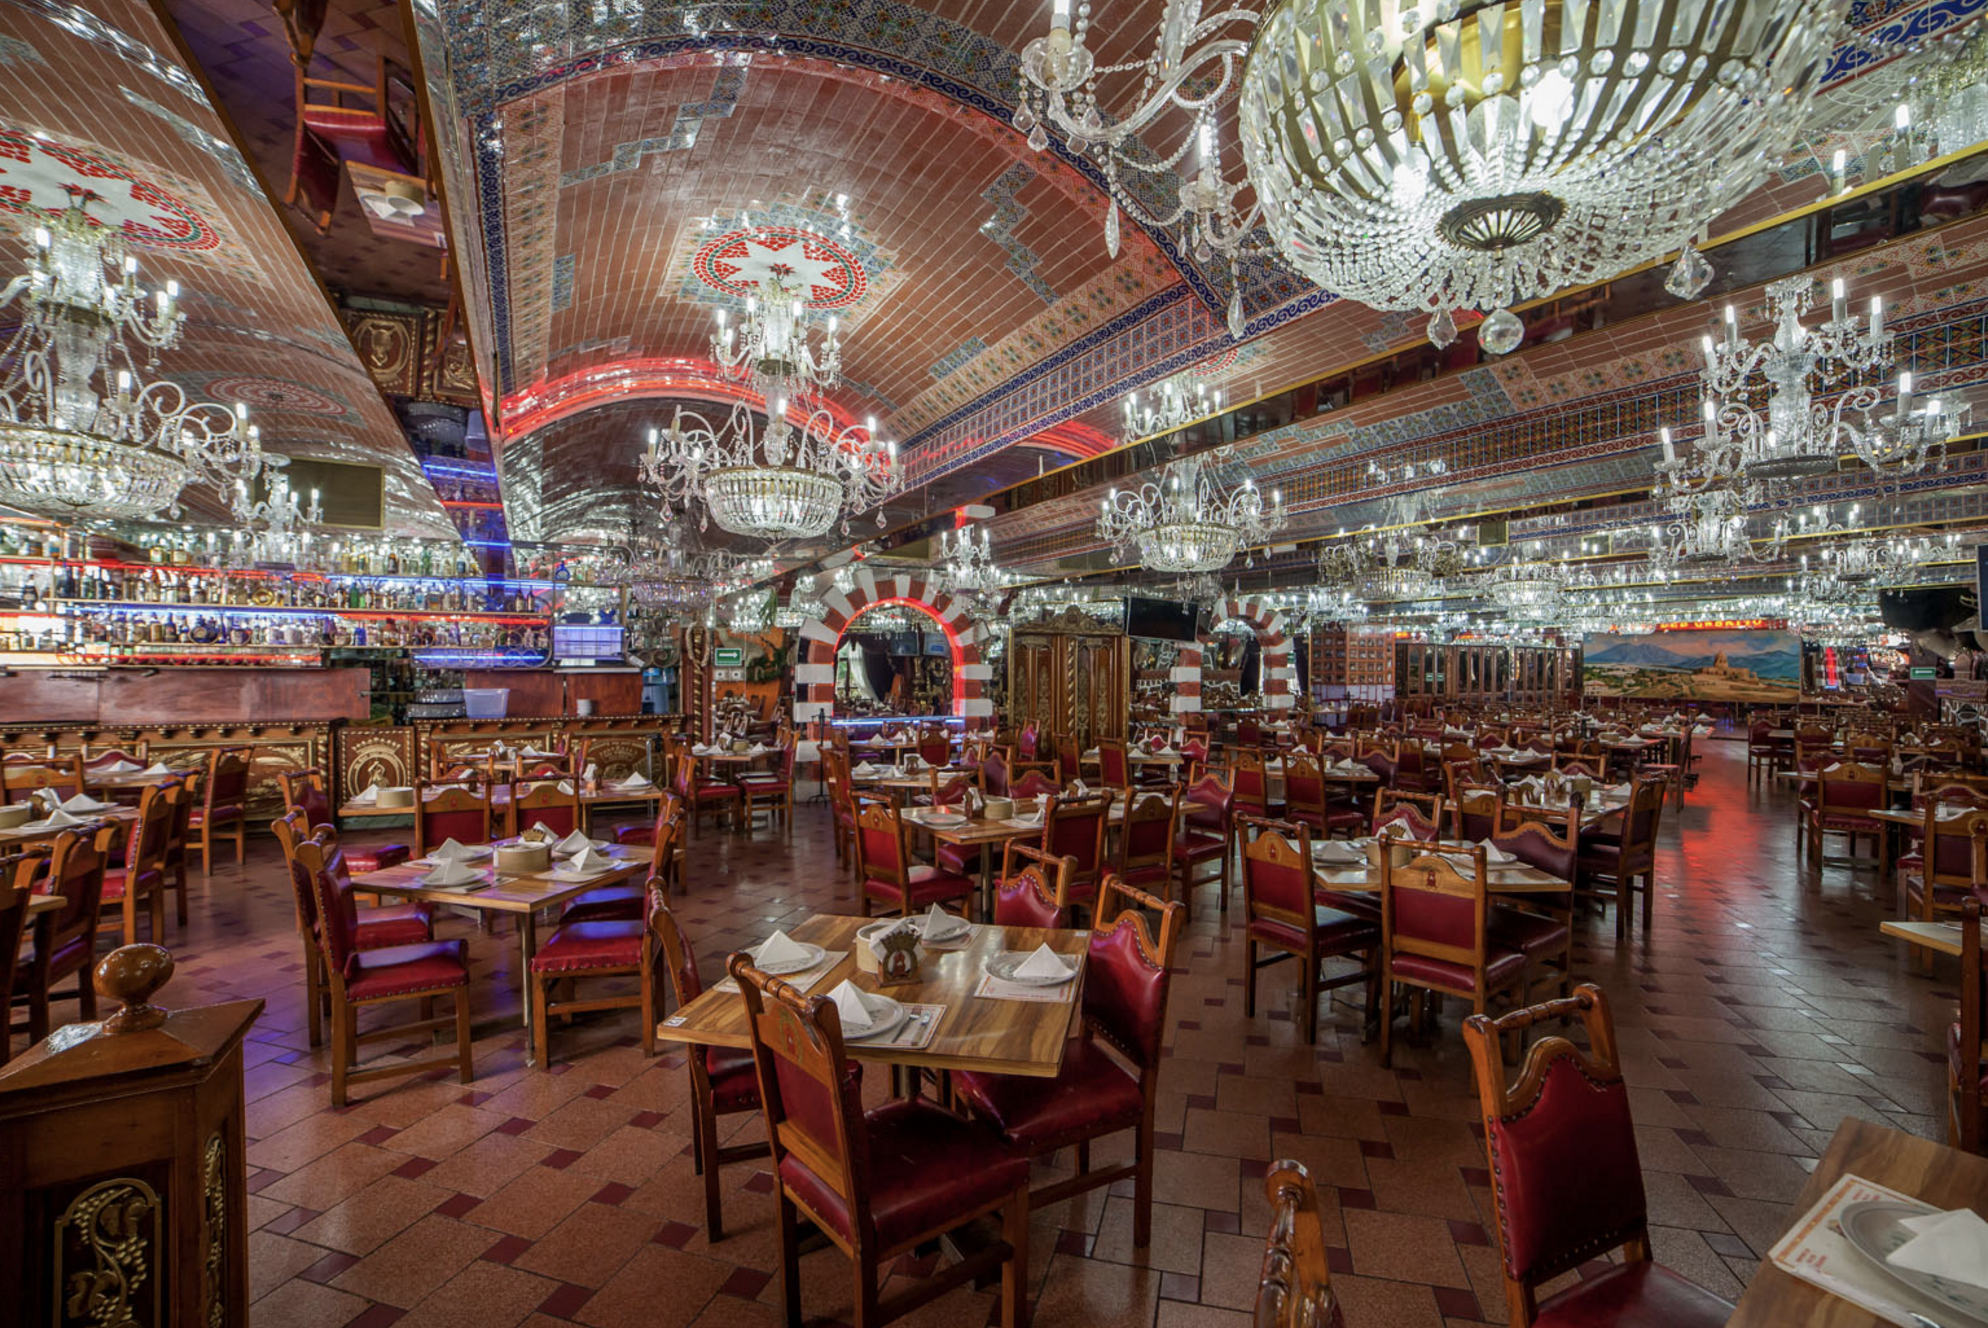 Este Es El Restaurant Al Que Jenni Rivera Iba Cada Vez Que Visitaba Monterrey Y Fue El último Que Visitó Con Vida